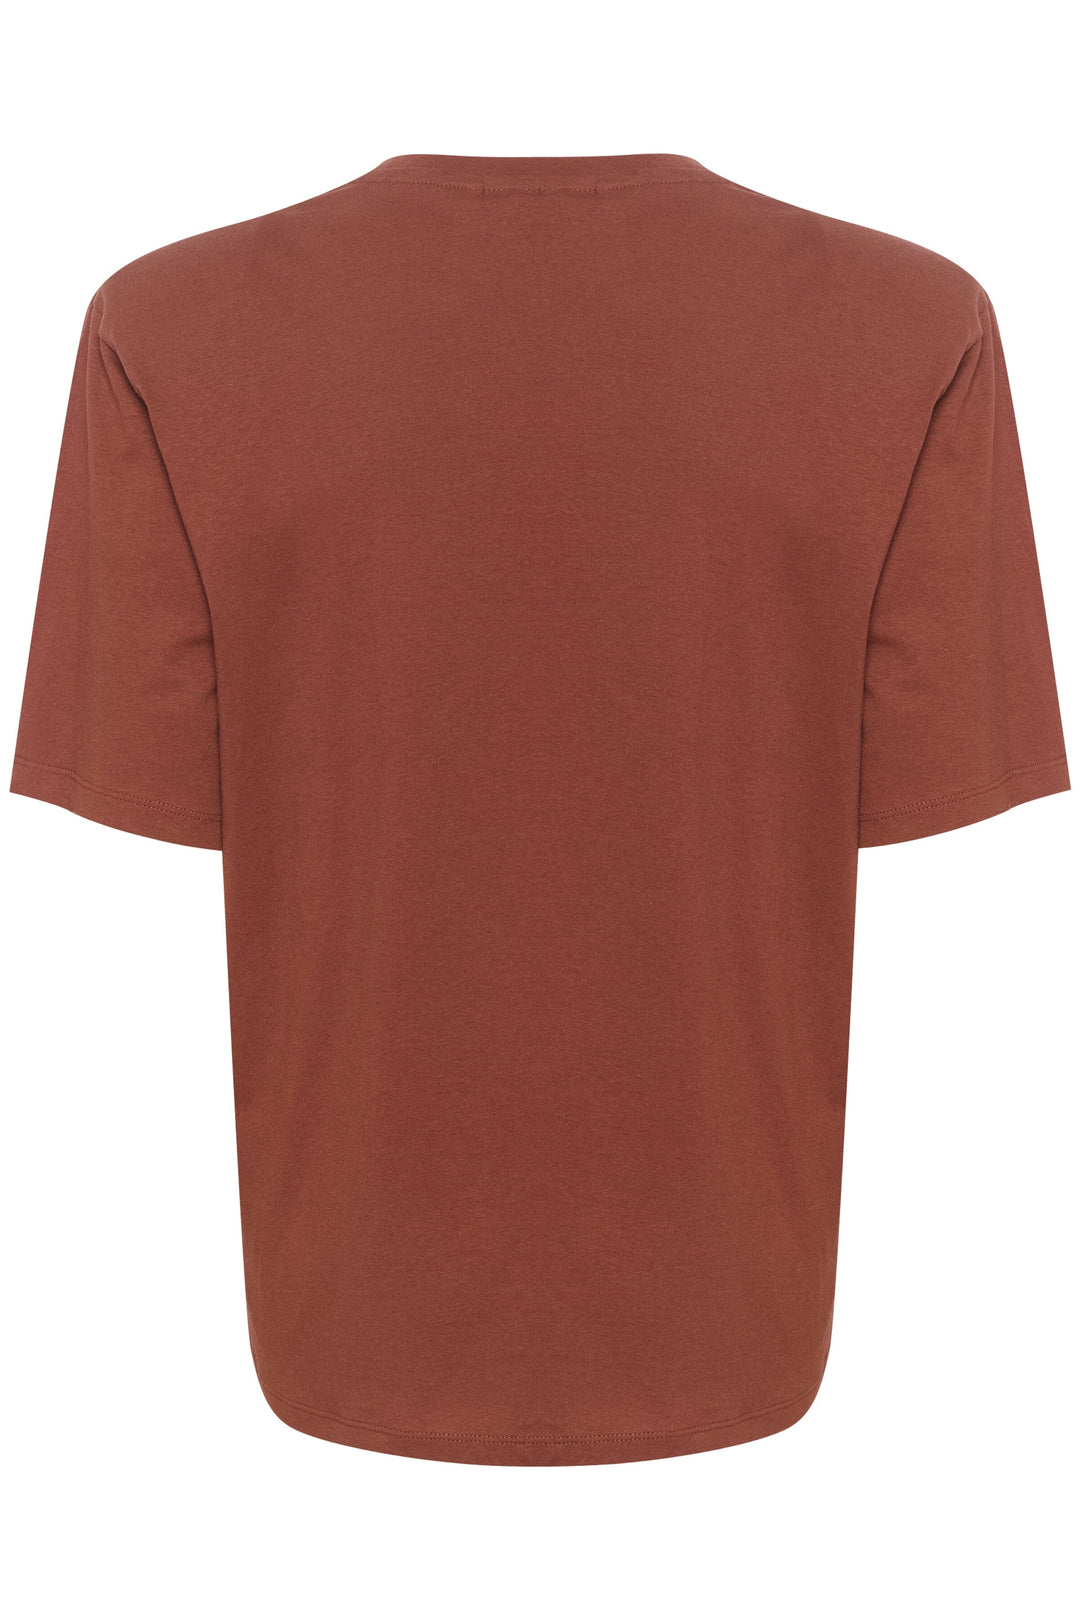 Gestuz - SamurillyGZ P tee - Desert brown T-shirts 